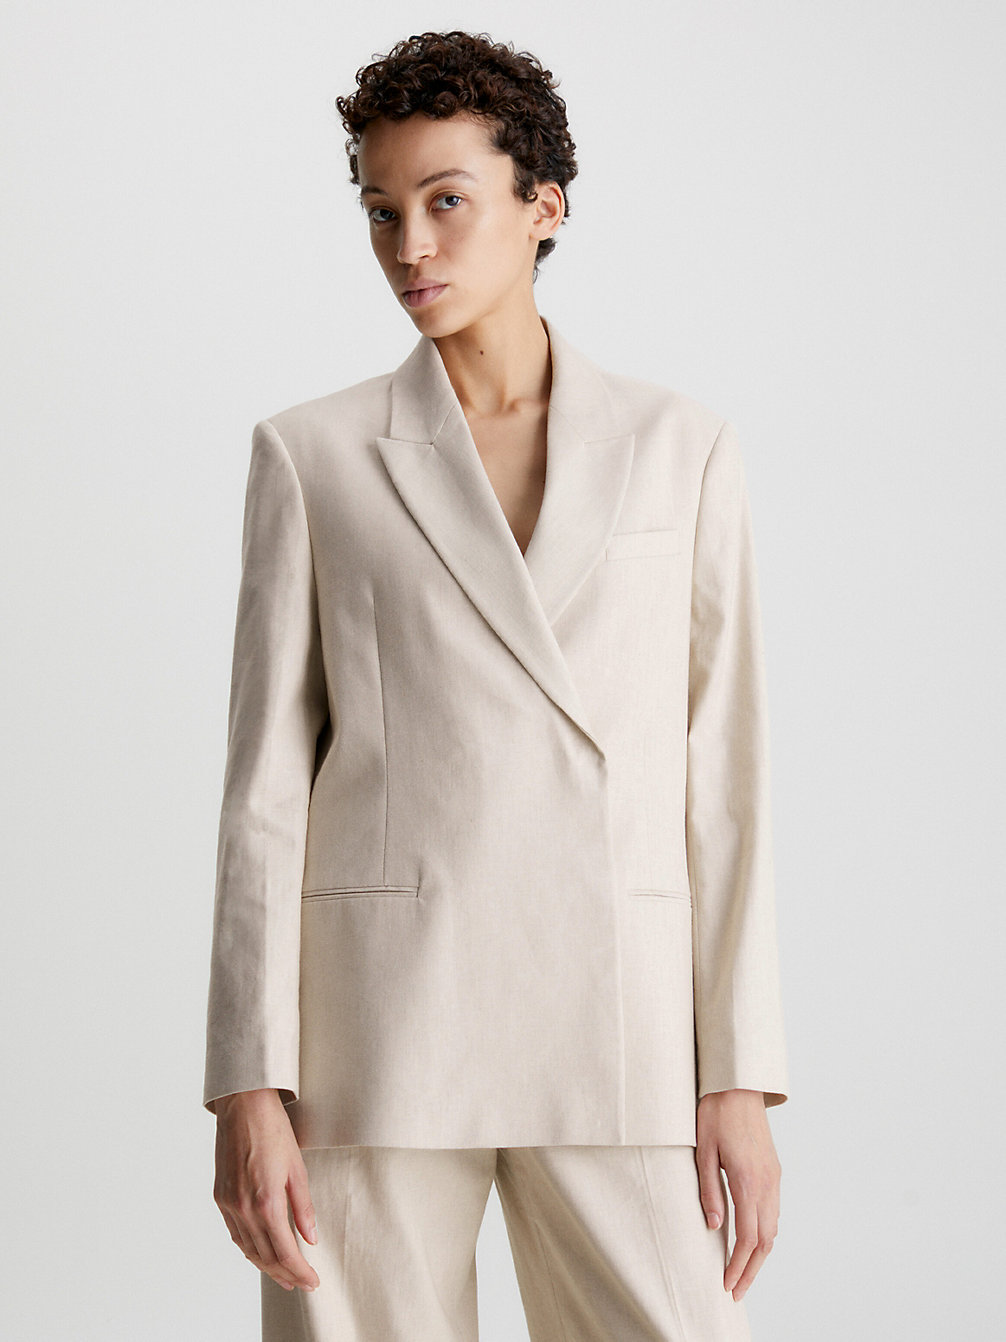 SMOOTH BEIGE Relaxed Linen Tailored Blazer undefined women Calvin Klein